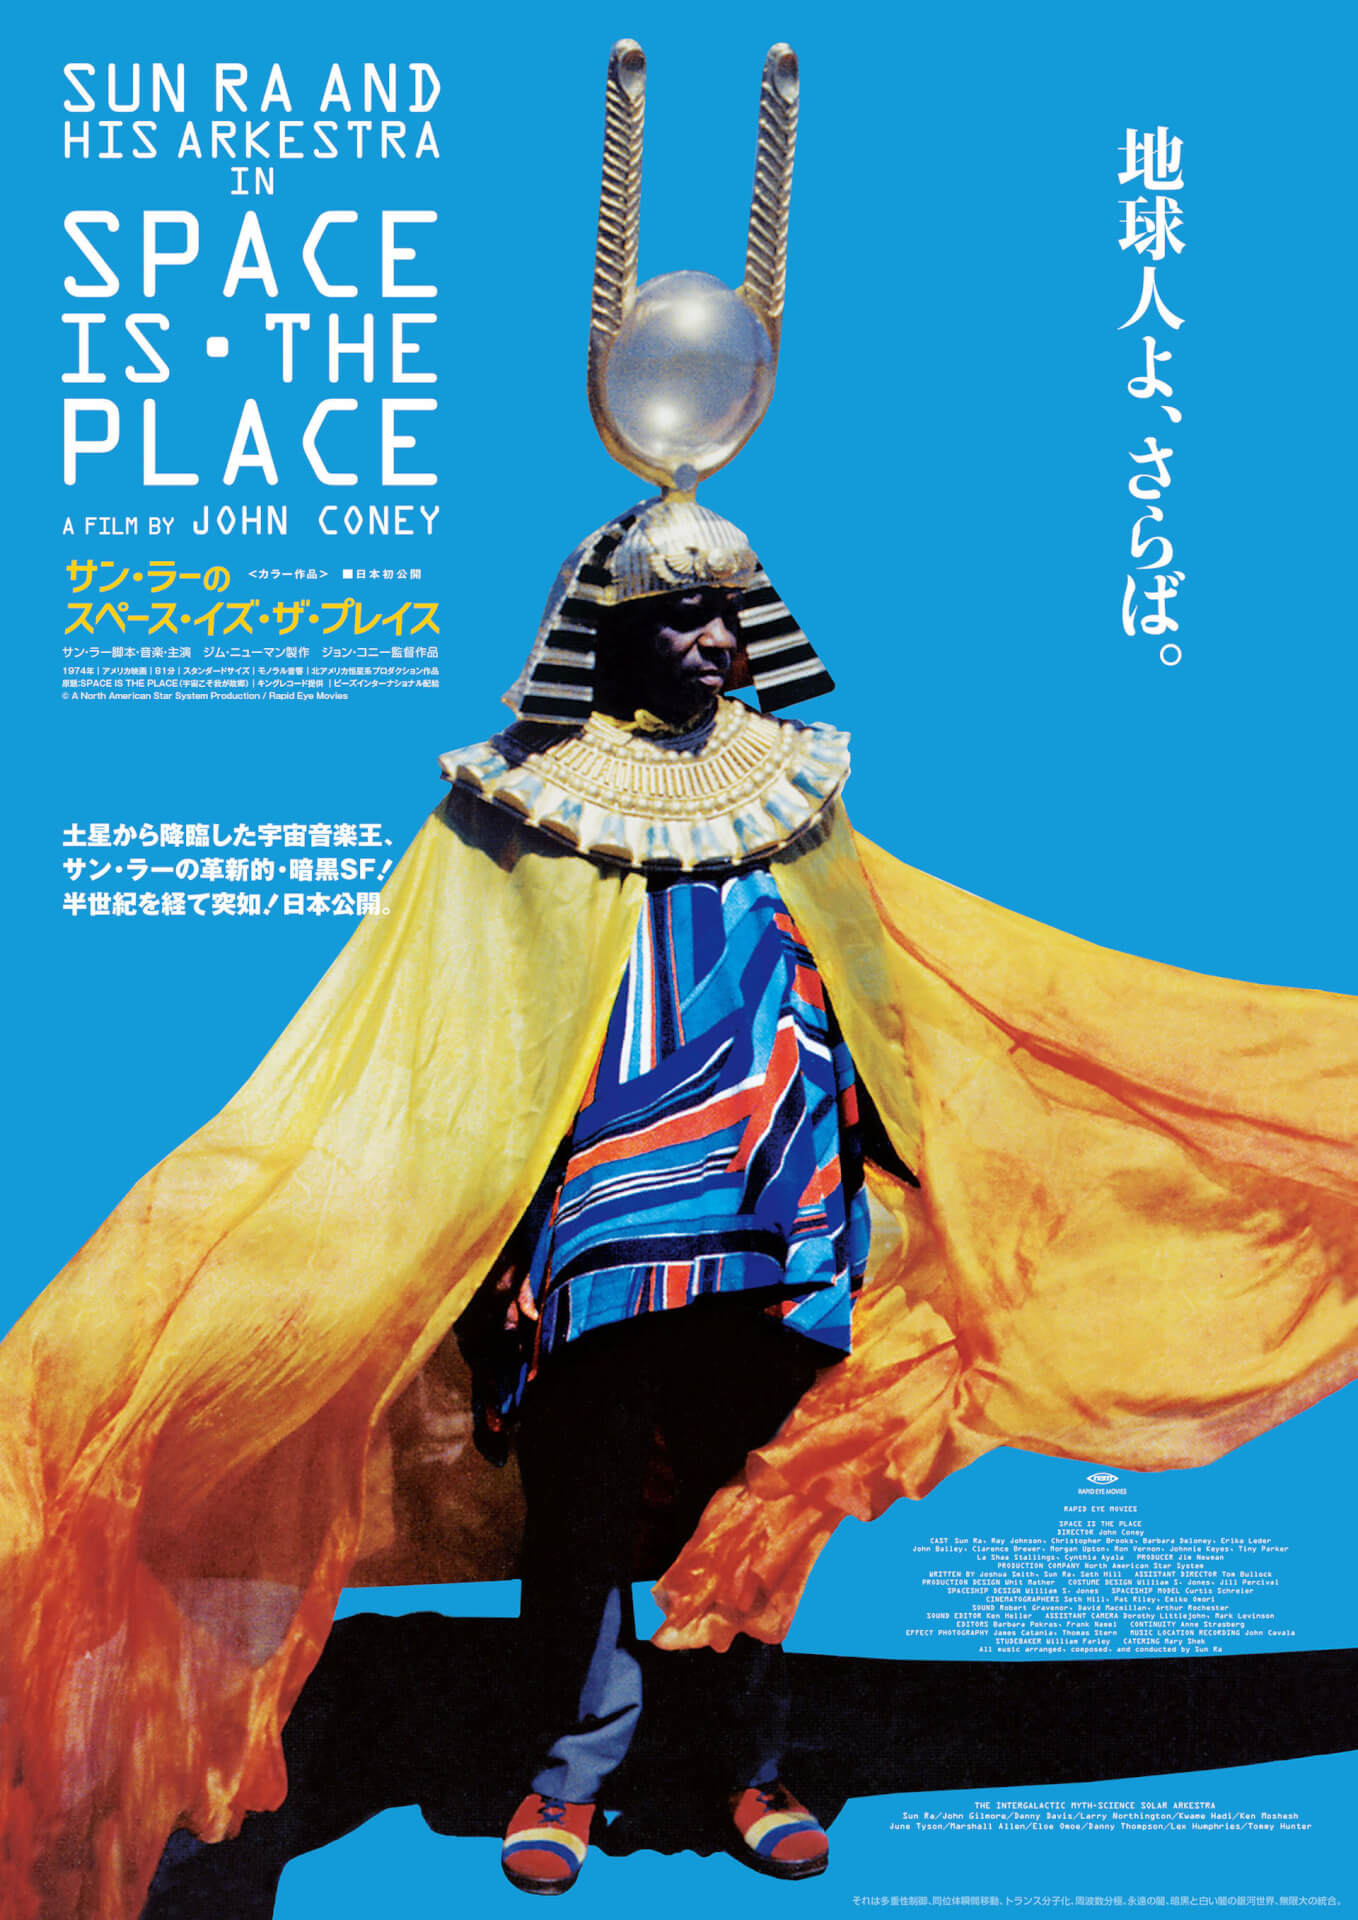 地球よ、さらば。Sun Raが脚本、音楽、主演をつとめた映画『サン・ラーのスペース・イズ・ザ・プレイス』が日本初上映決定！ film201105_sunra_1